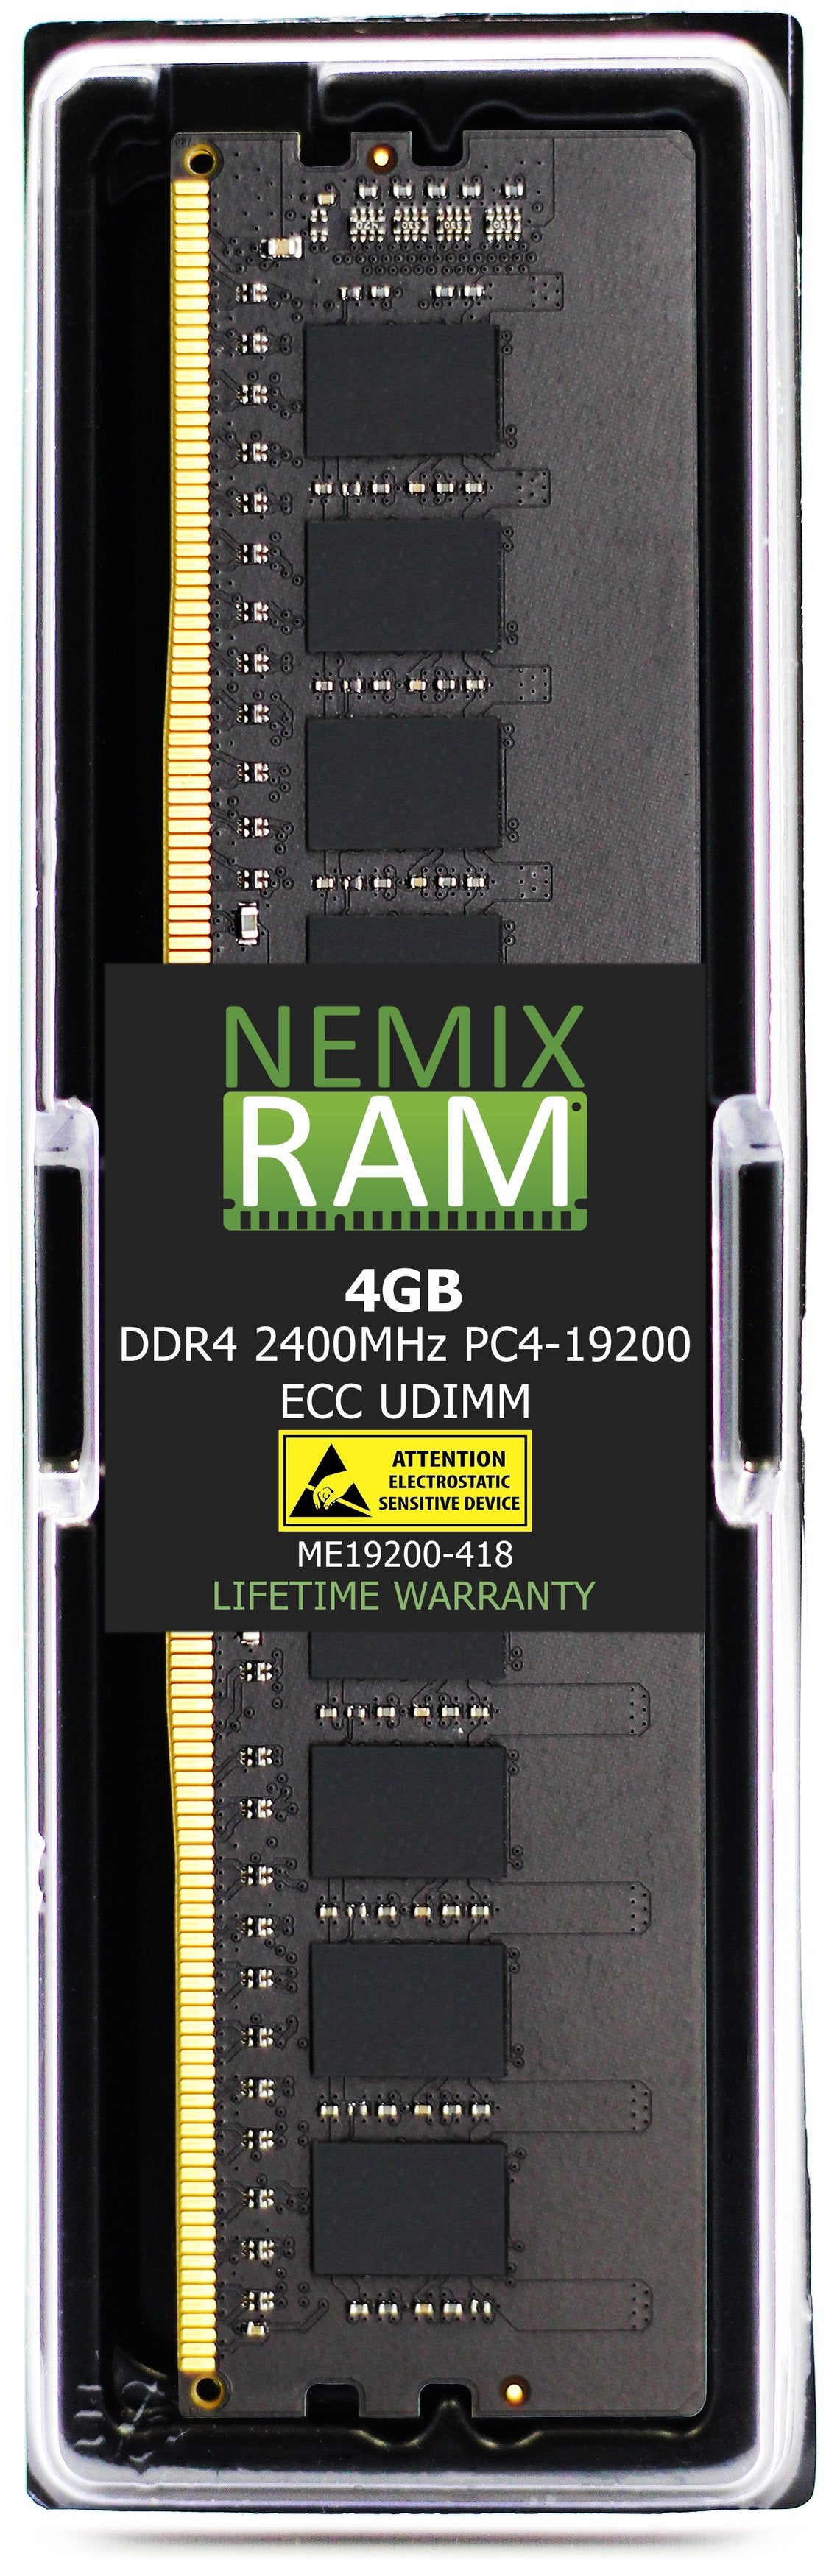 4GB DDR4 2400MHZ PC4-19200 ECC UDIMM Compatible with Supermicro MEM-DR440L-CL01-EU24